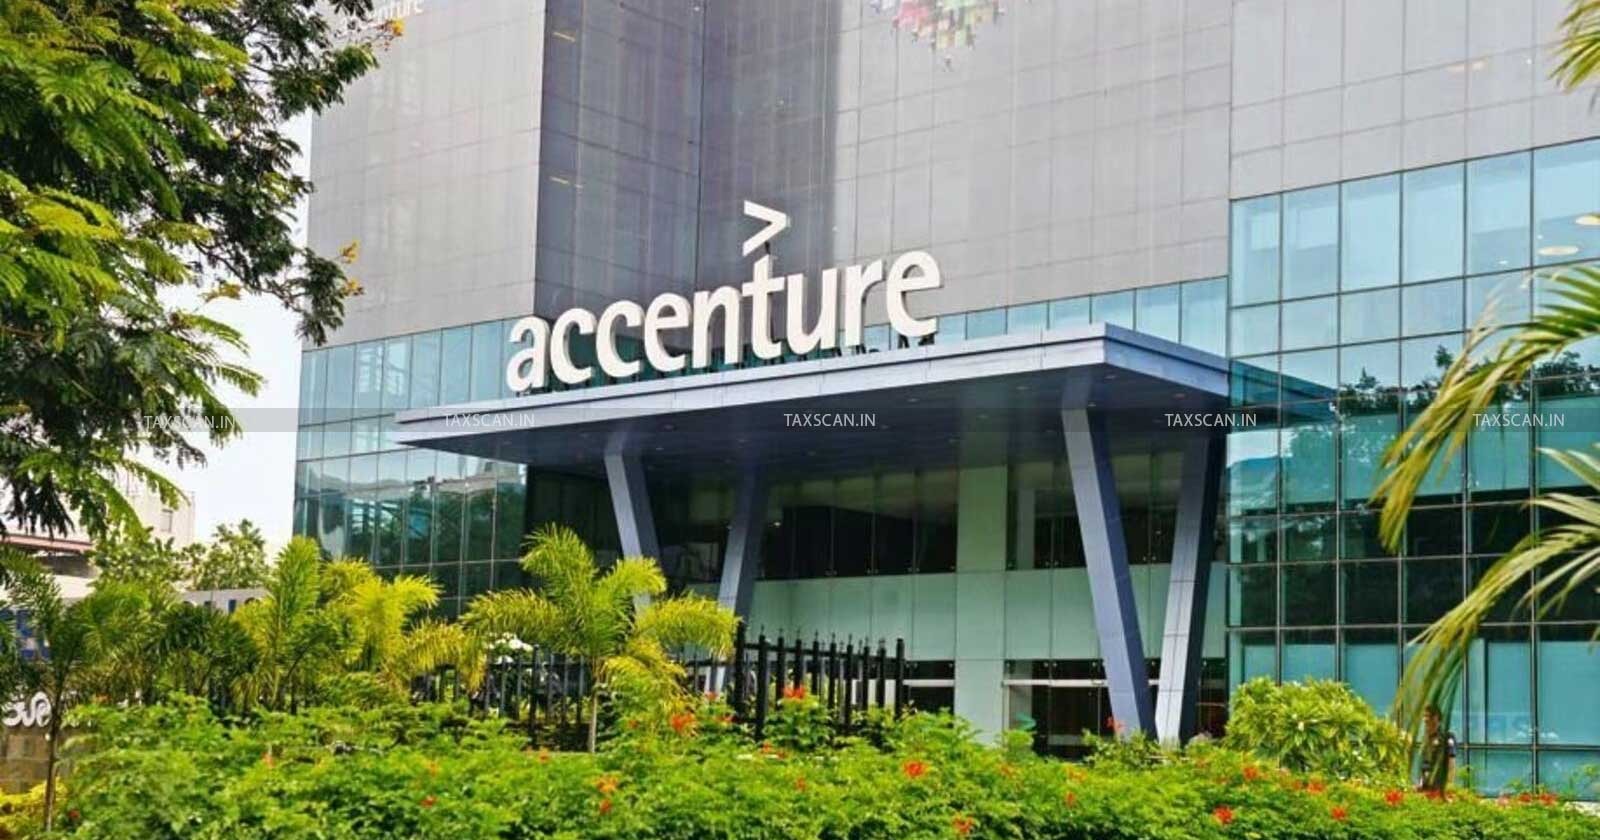 MBA Vacancy in Accenture - CA Vacancy in Accenture - Job Vacancy in Accenture - TAXSCAN